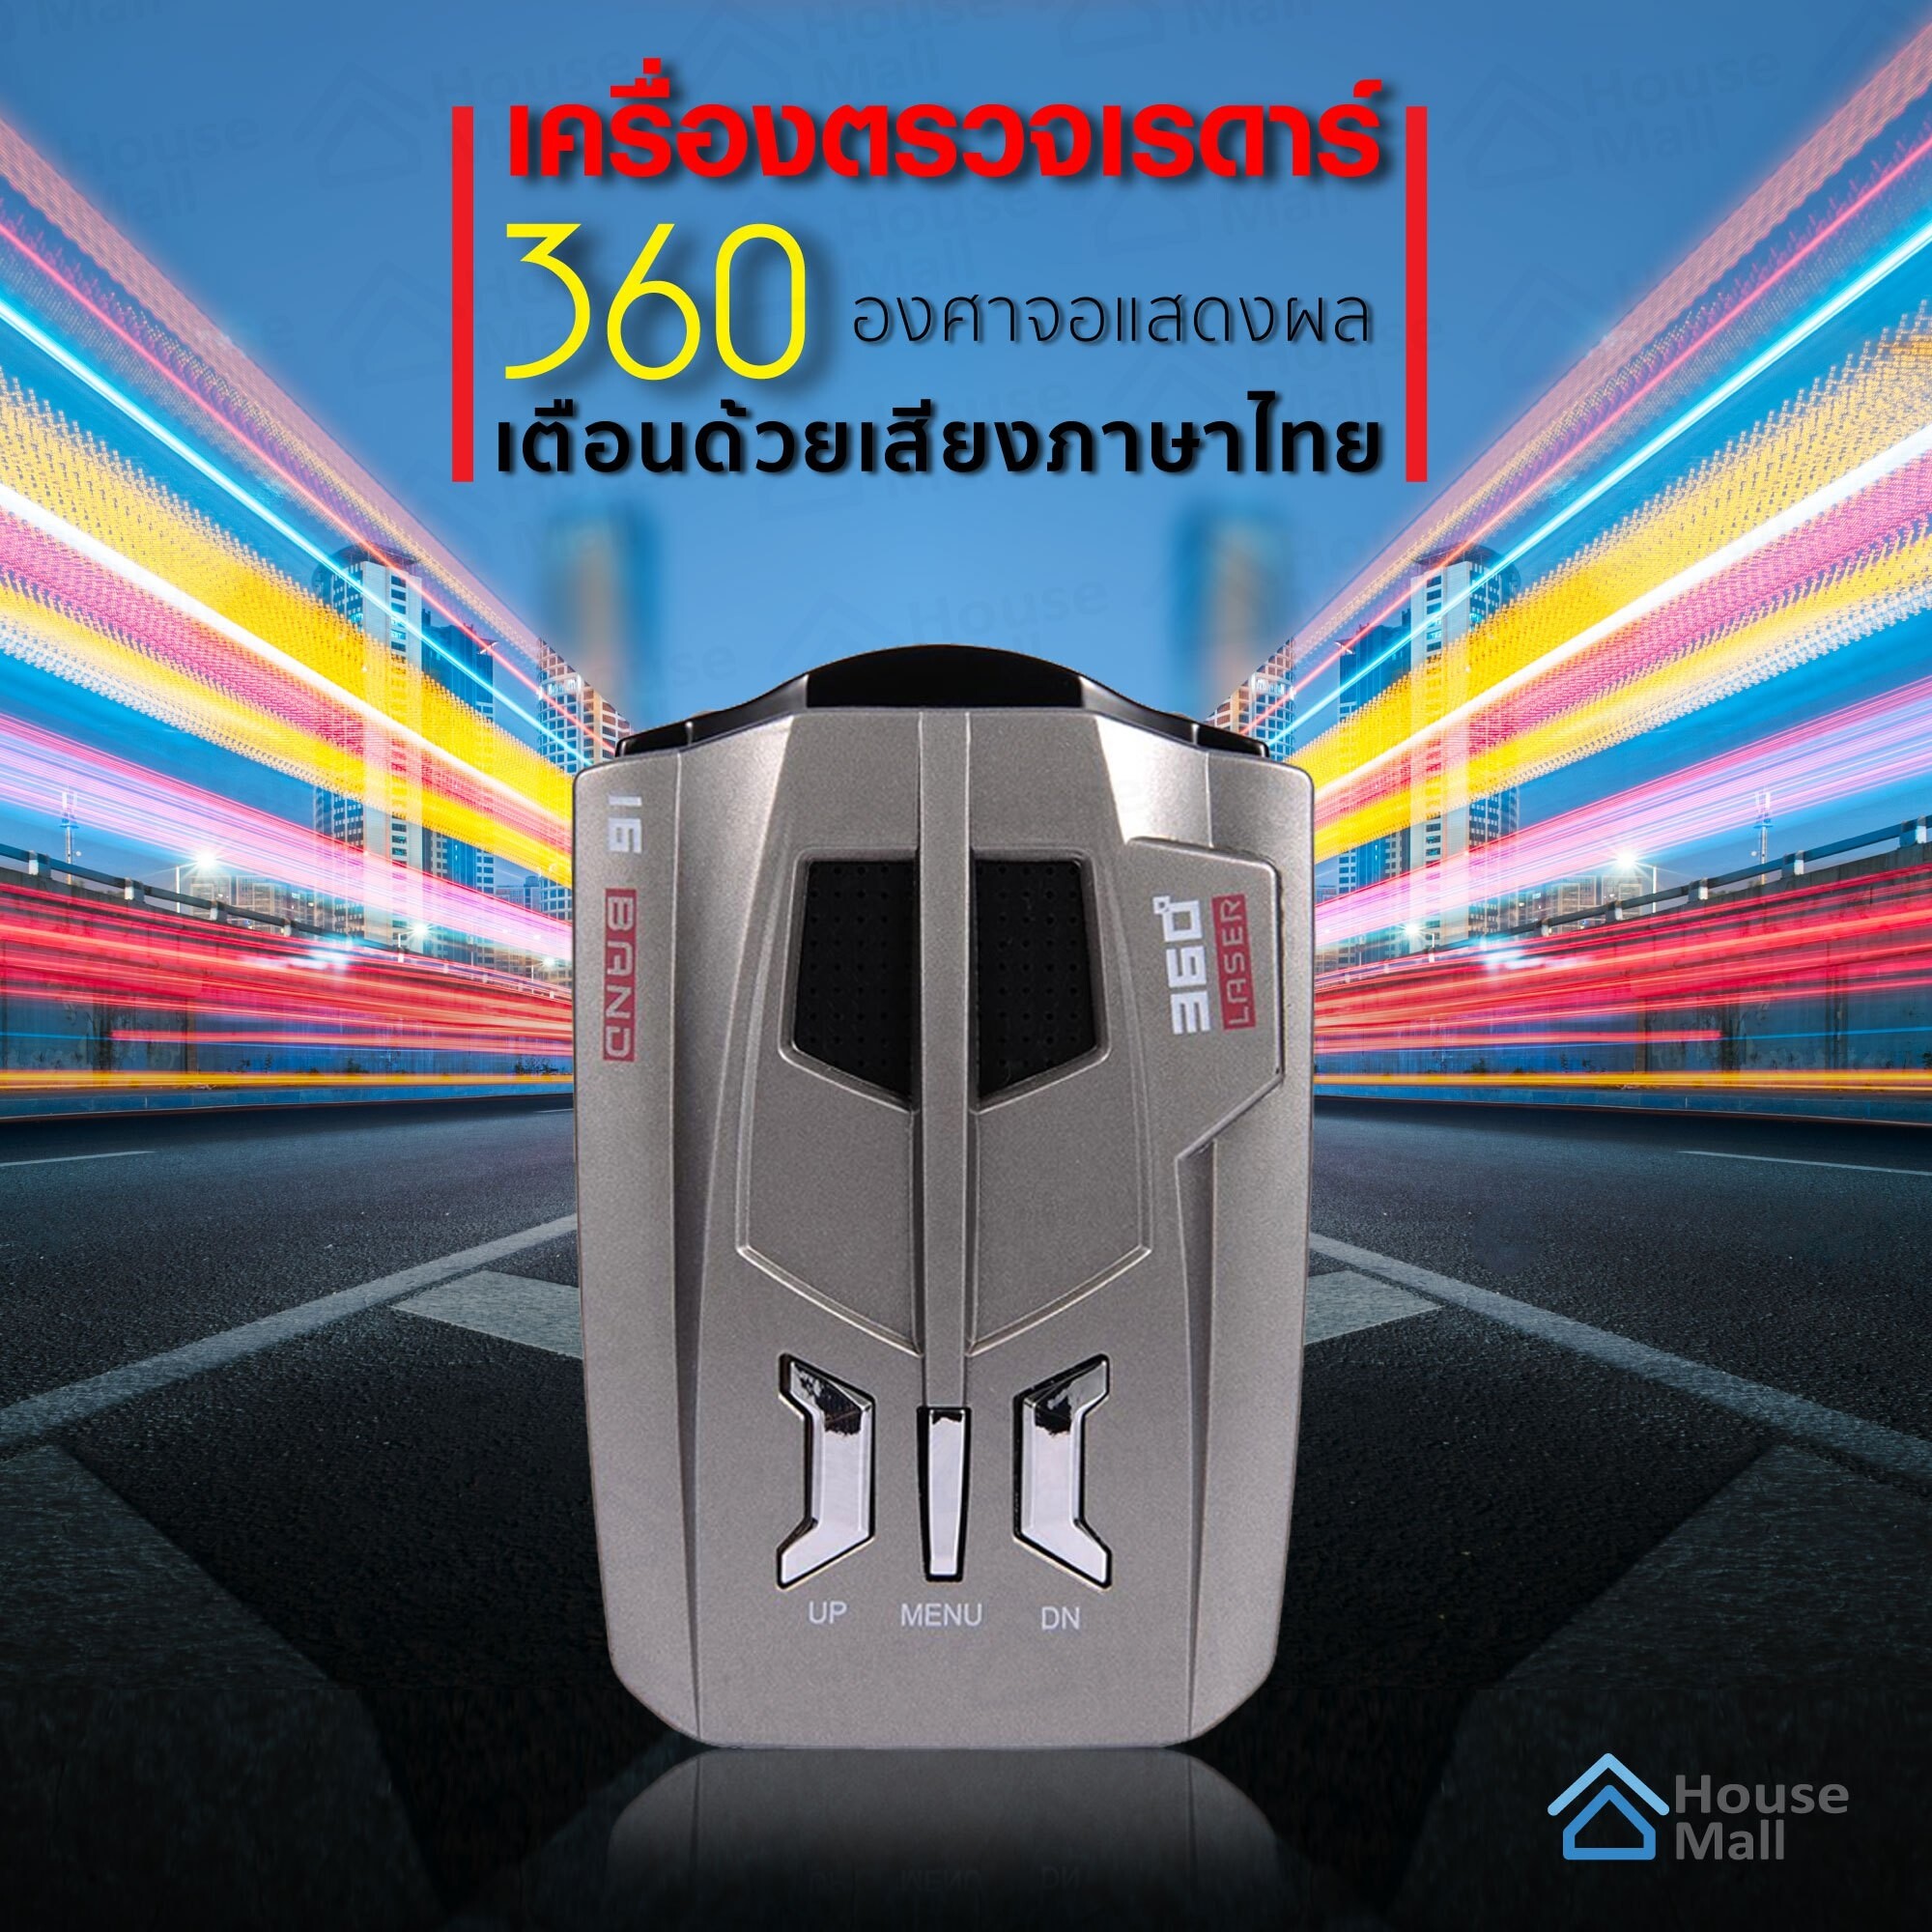 เครื่องตรวจเรดาร์ เครื่องตรวจจับความเร็วรถยนต์ 360 องศาจอแสดงผล เตือนด้วยเสียงภาษาไทย ตรวจจับเรดาร์จับความเร็ว